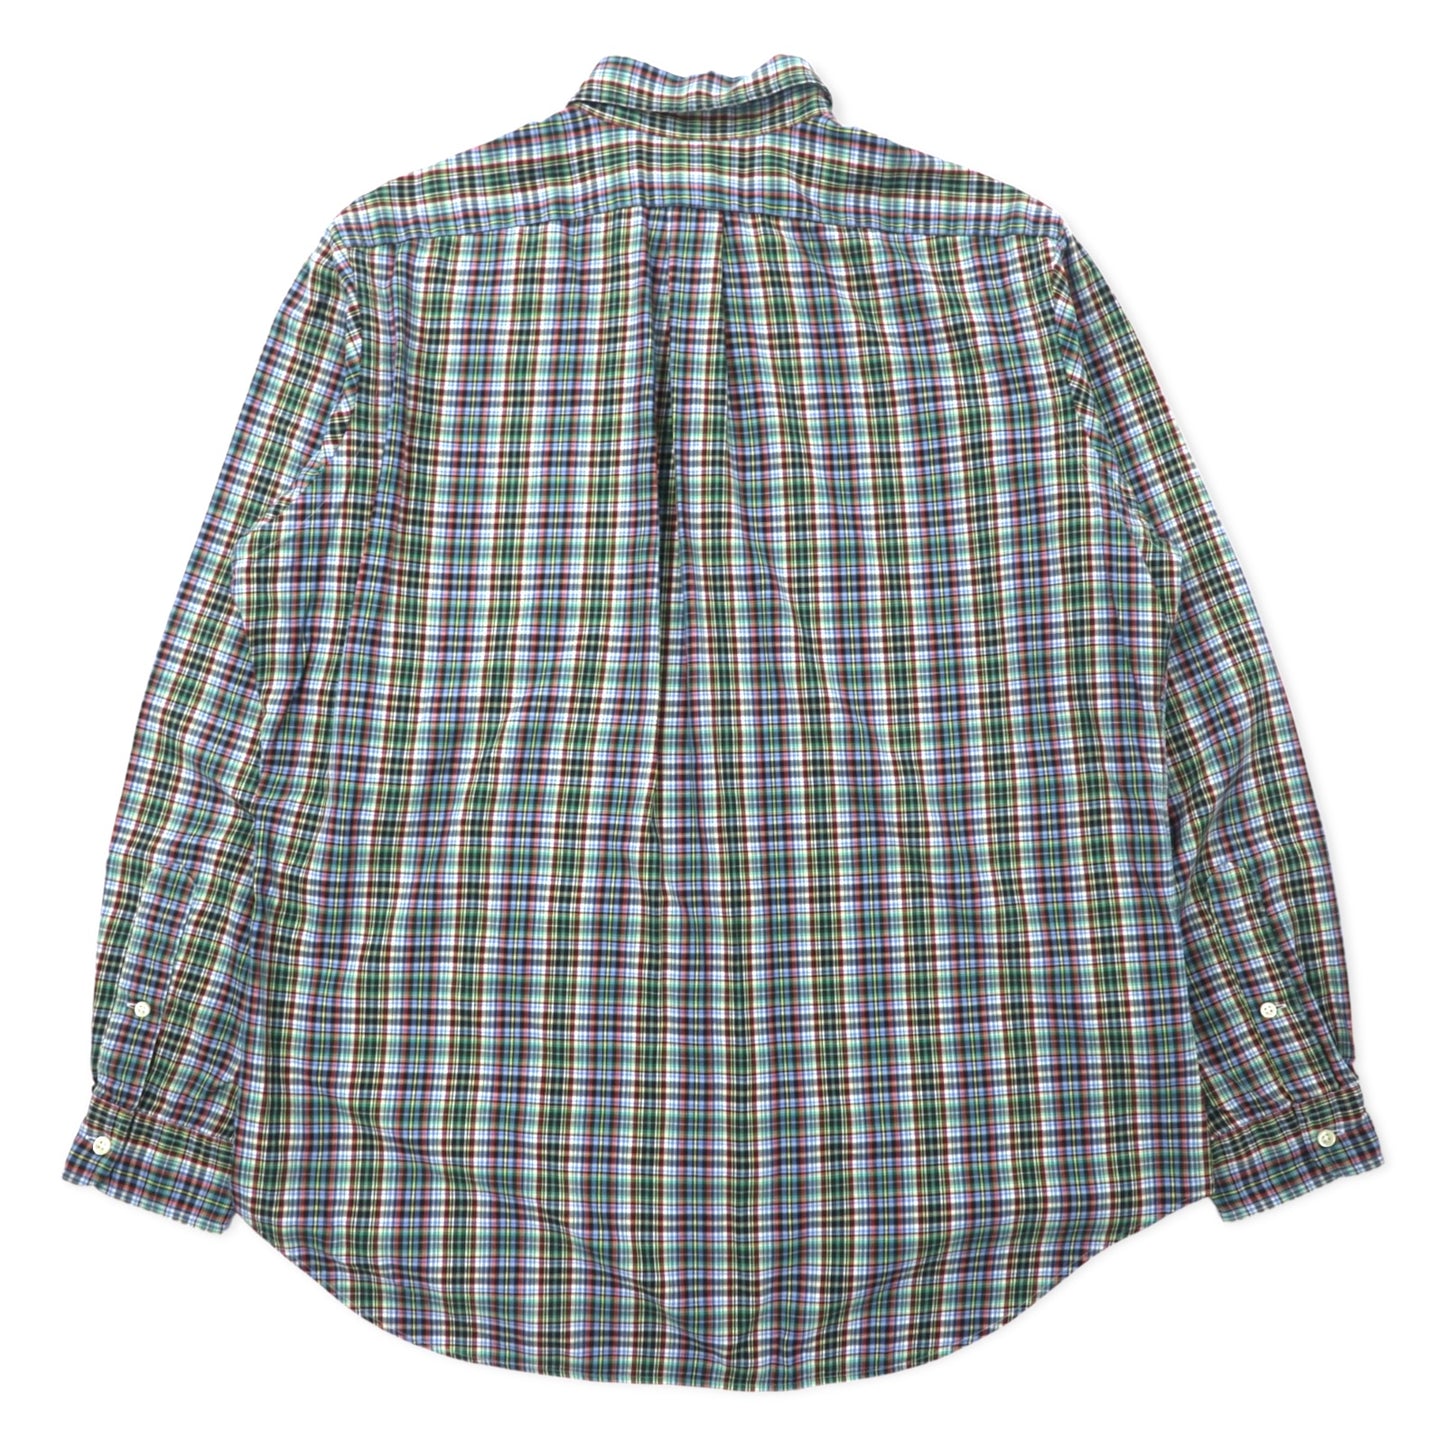 Ralph Lauren ウィンドペンチェック ボタンダウンシャツ L ブルー カーキ コットン CLASSIC FIT スモールポニー刺繍